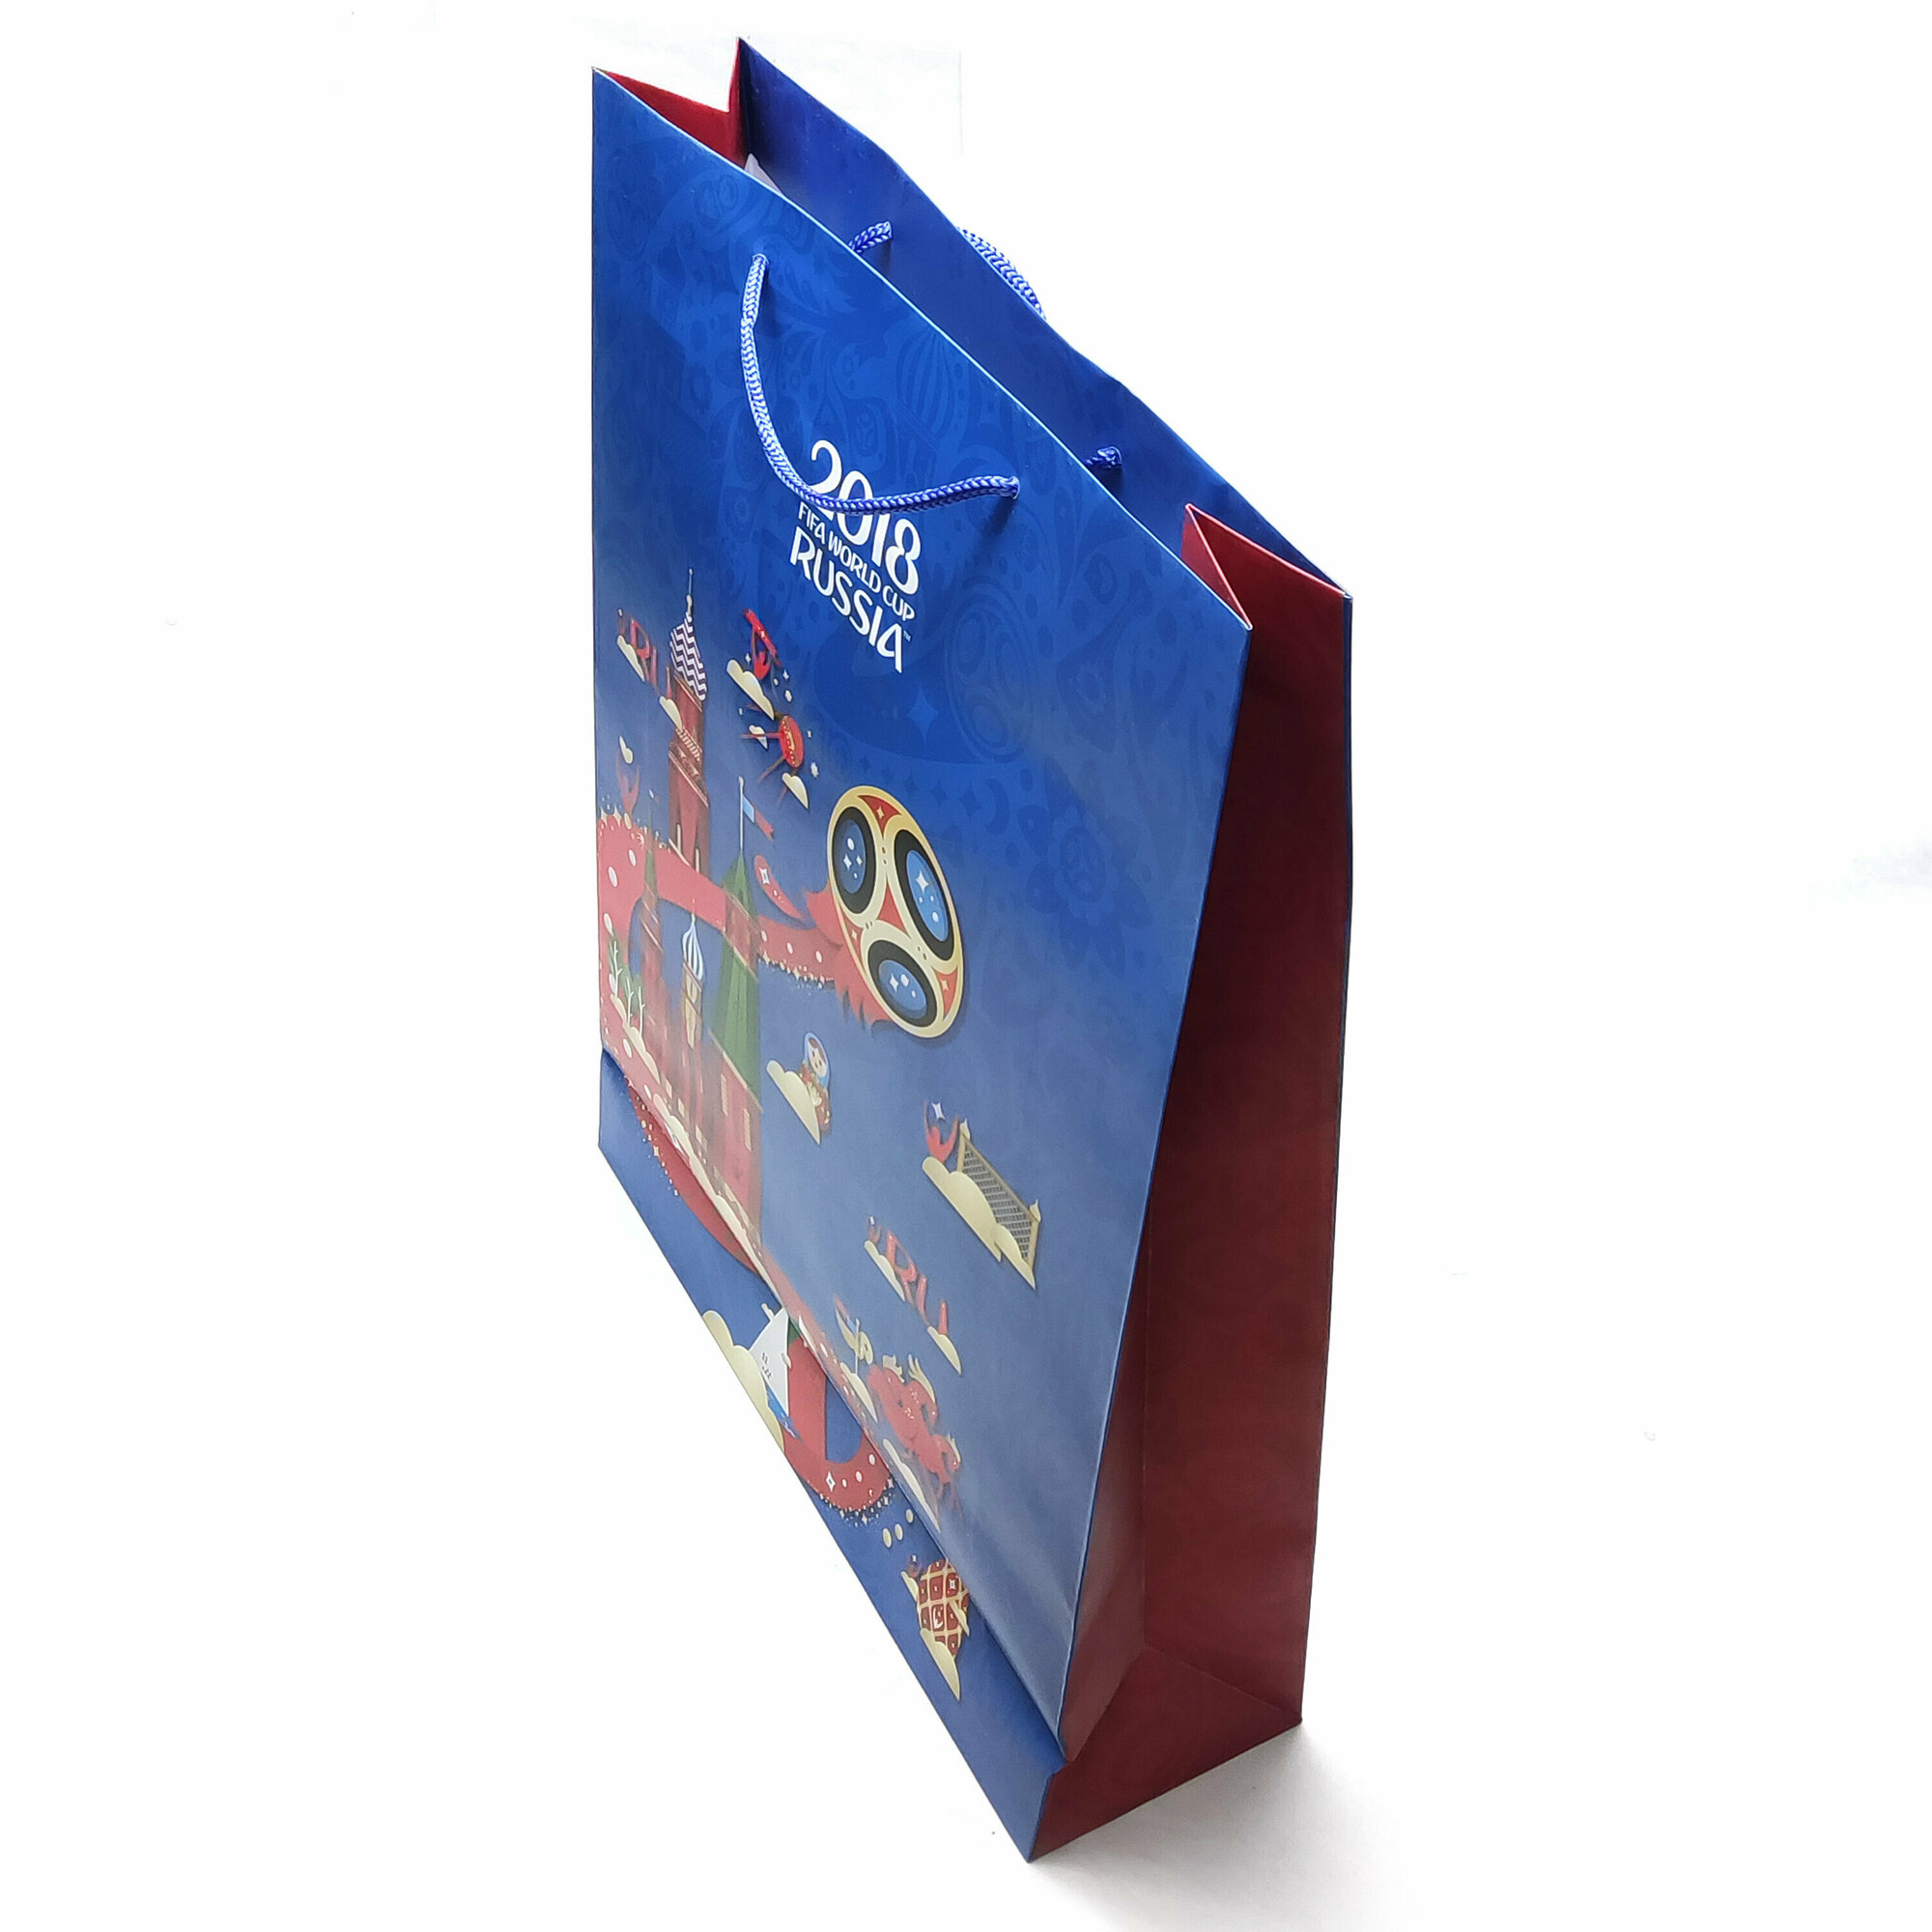 Пакет крафт подарочный 24 штуки набор футбол спорт 45*33*10 см синий.